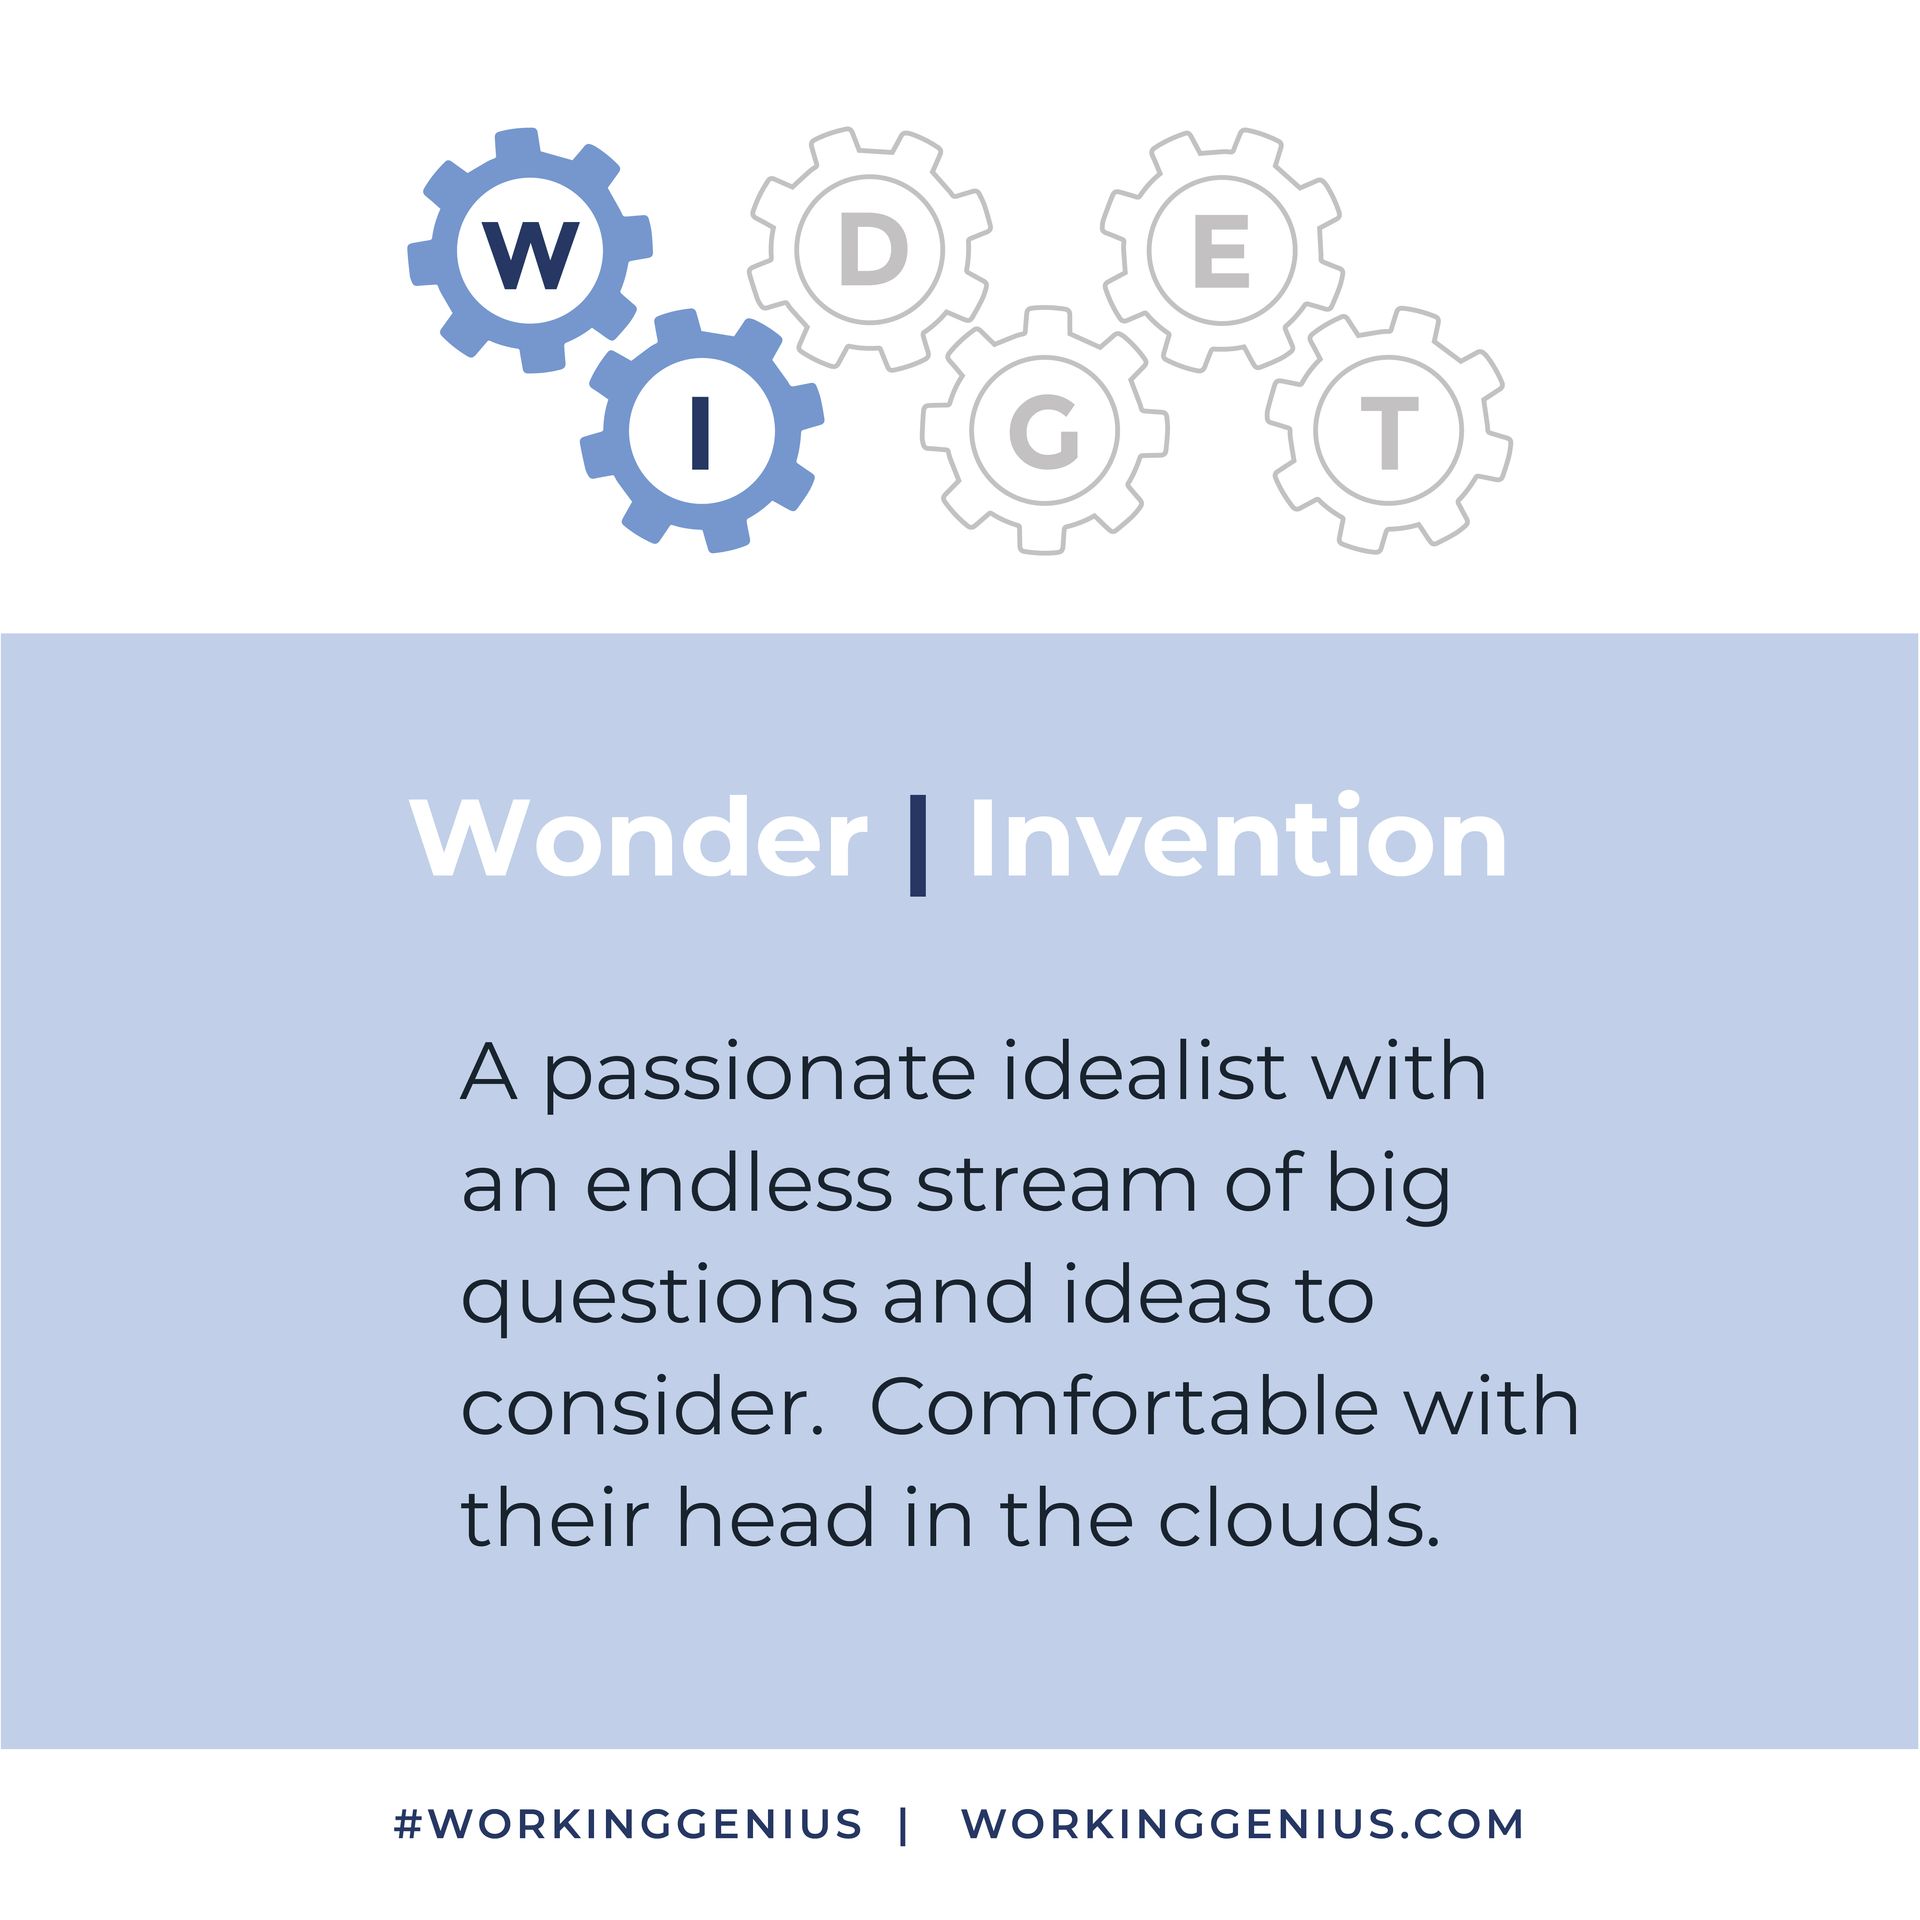 Working Genius Wonder Invention uit de 6 talenten voor soepel teamwork